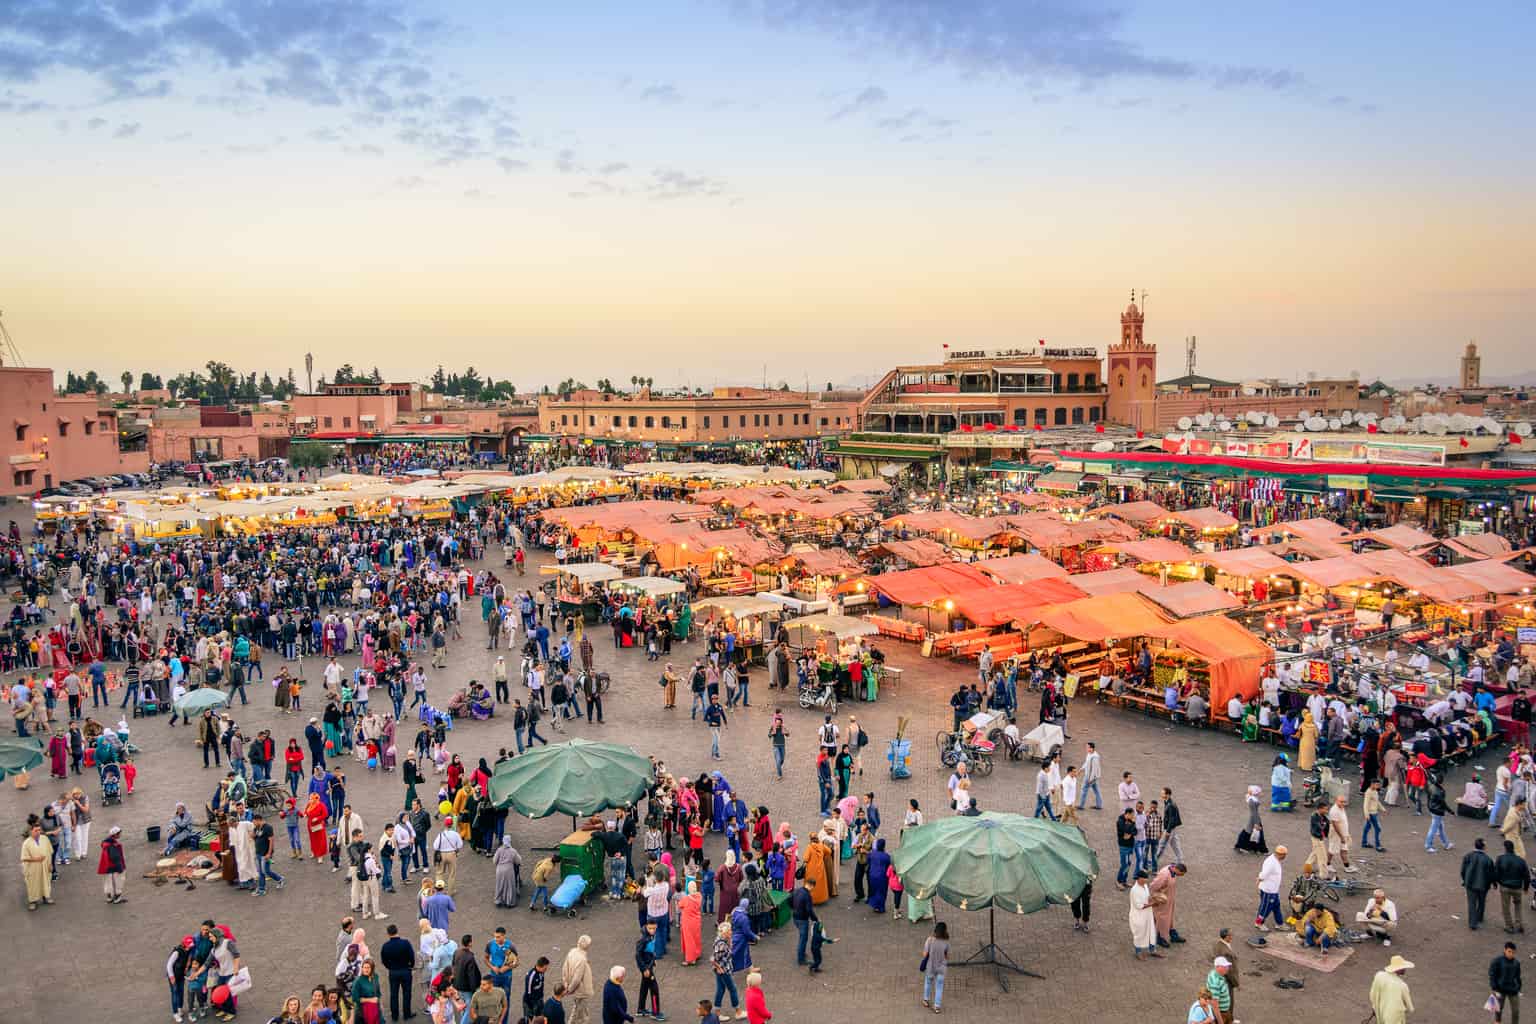 Activities In Marrakech